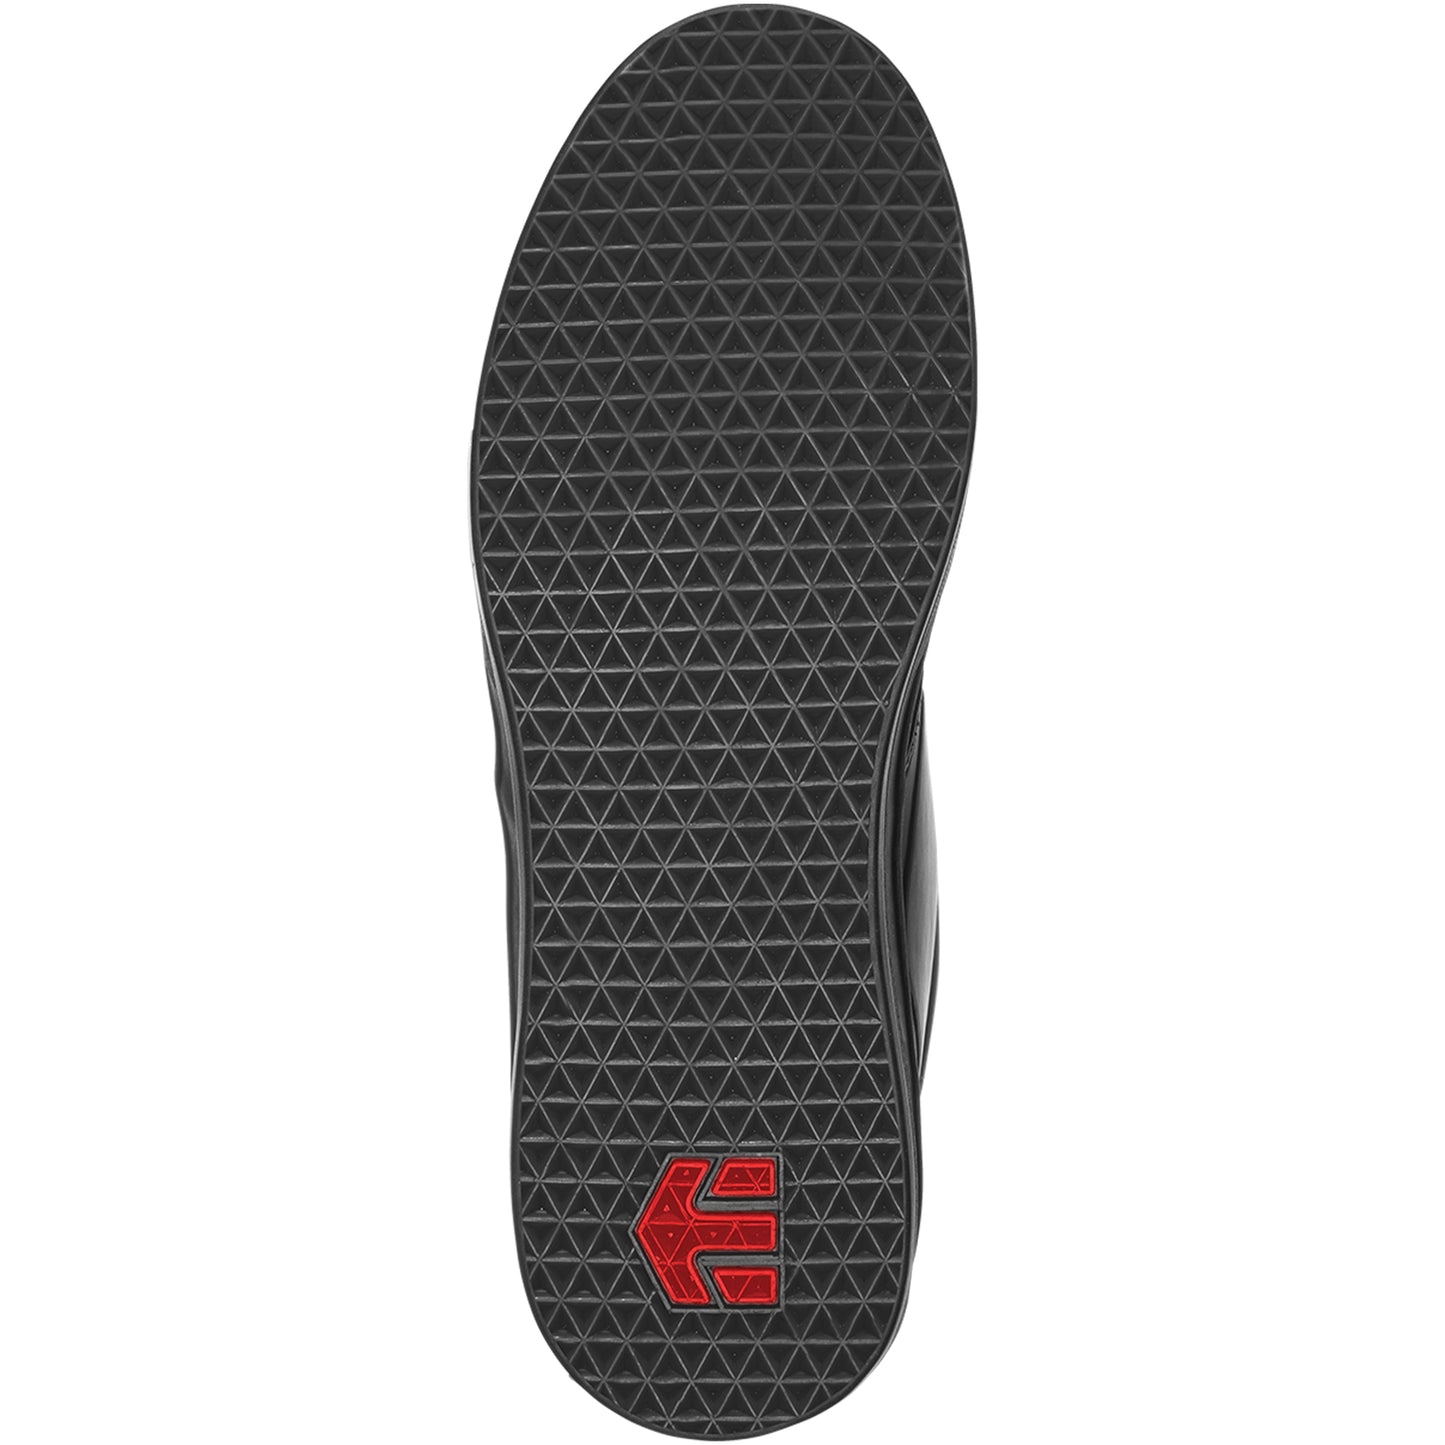 Etnies Semunuk Pro MTB Shoes (Black/Red)